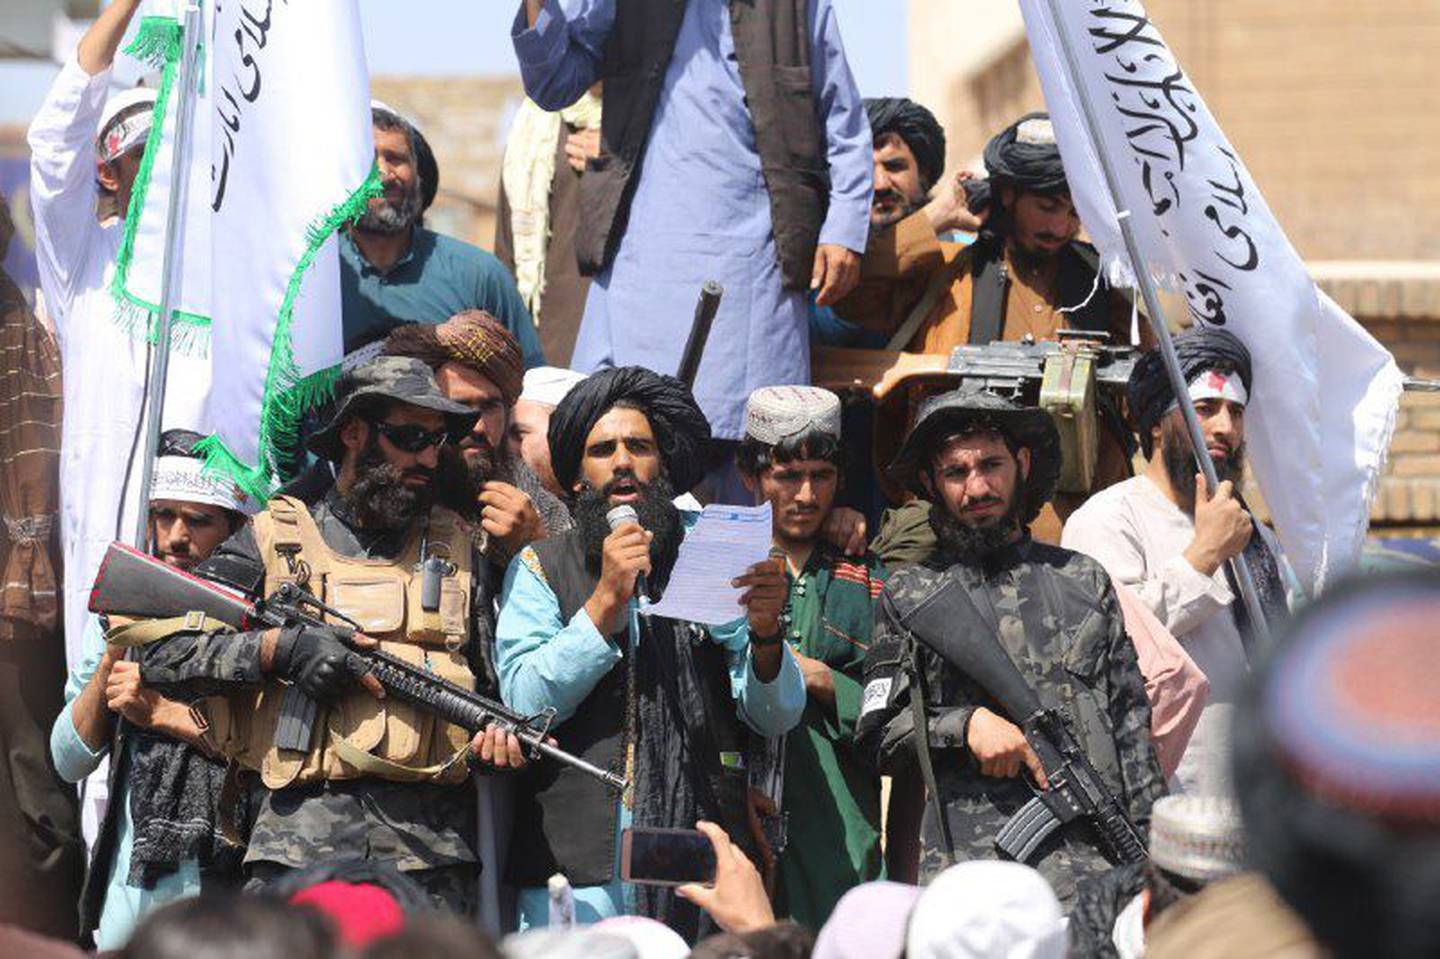 Los miembros del Talibán reunidos frente a la gobernación de Herat después de la finalización de la retirada de Estados Unidos de Afganistán.